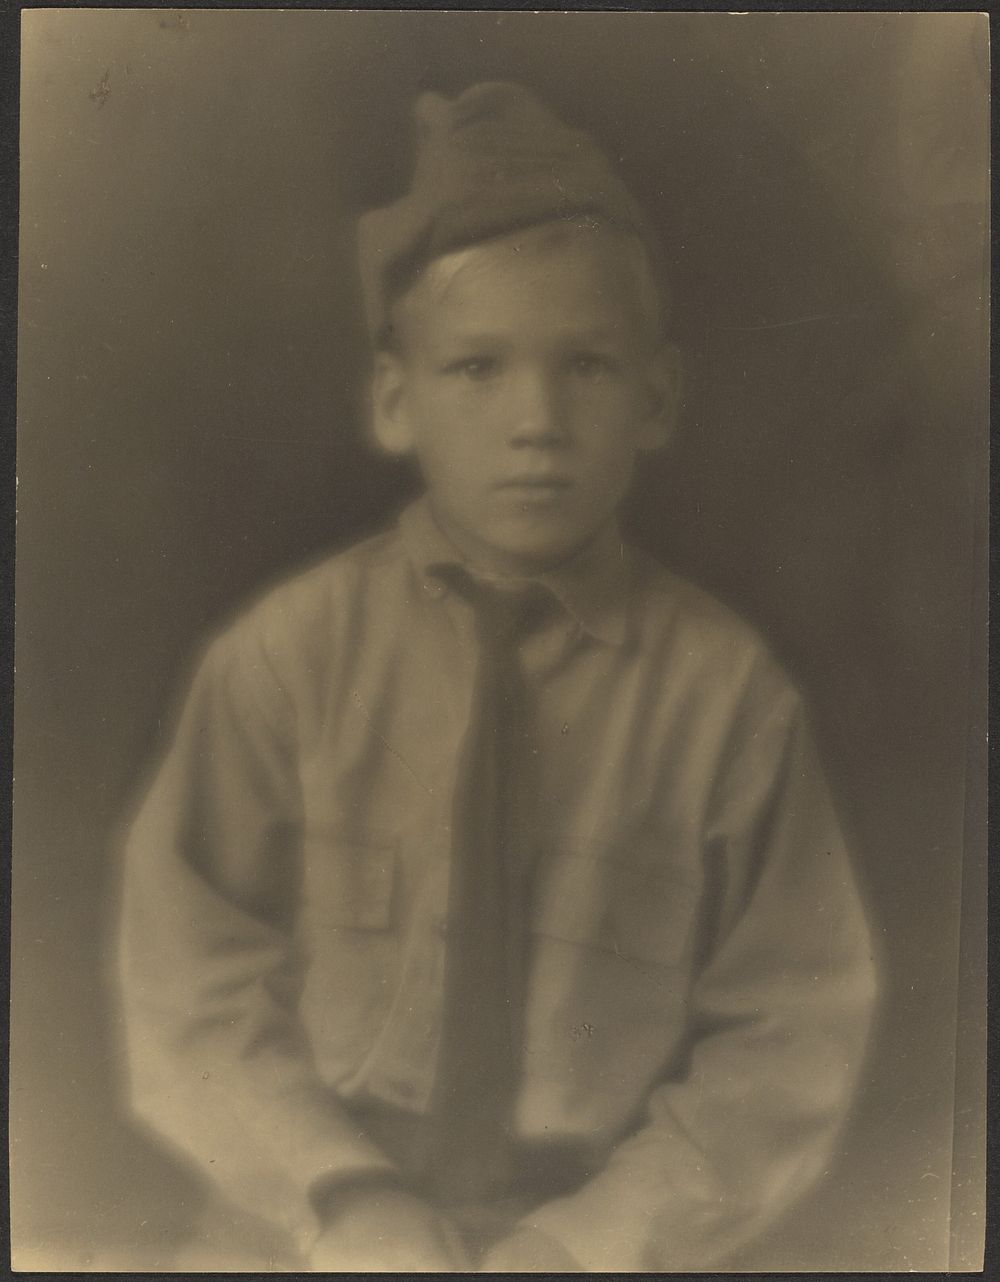 Boy Dressed as Soldier by Louis Fleckenstein